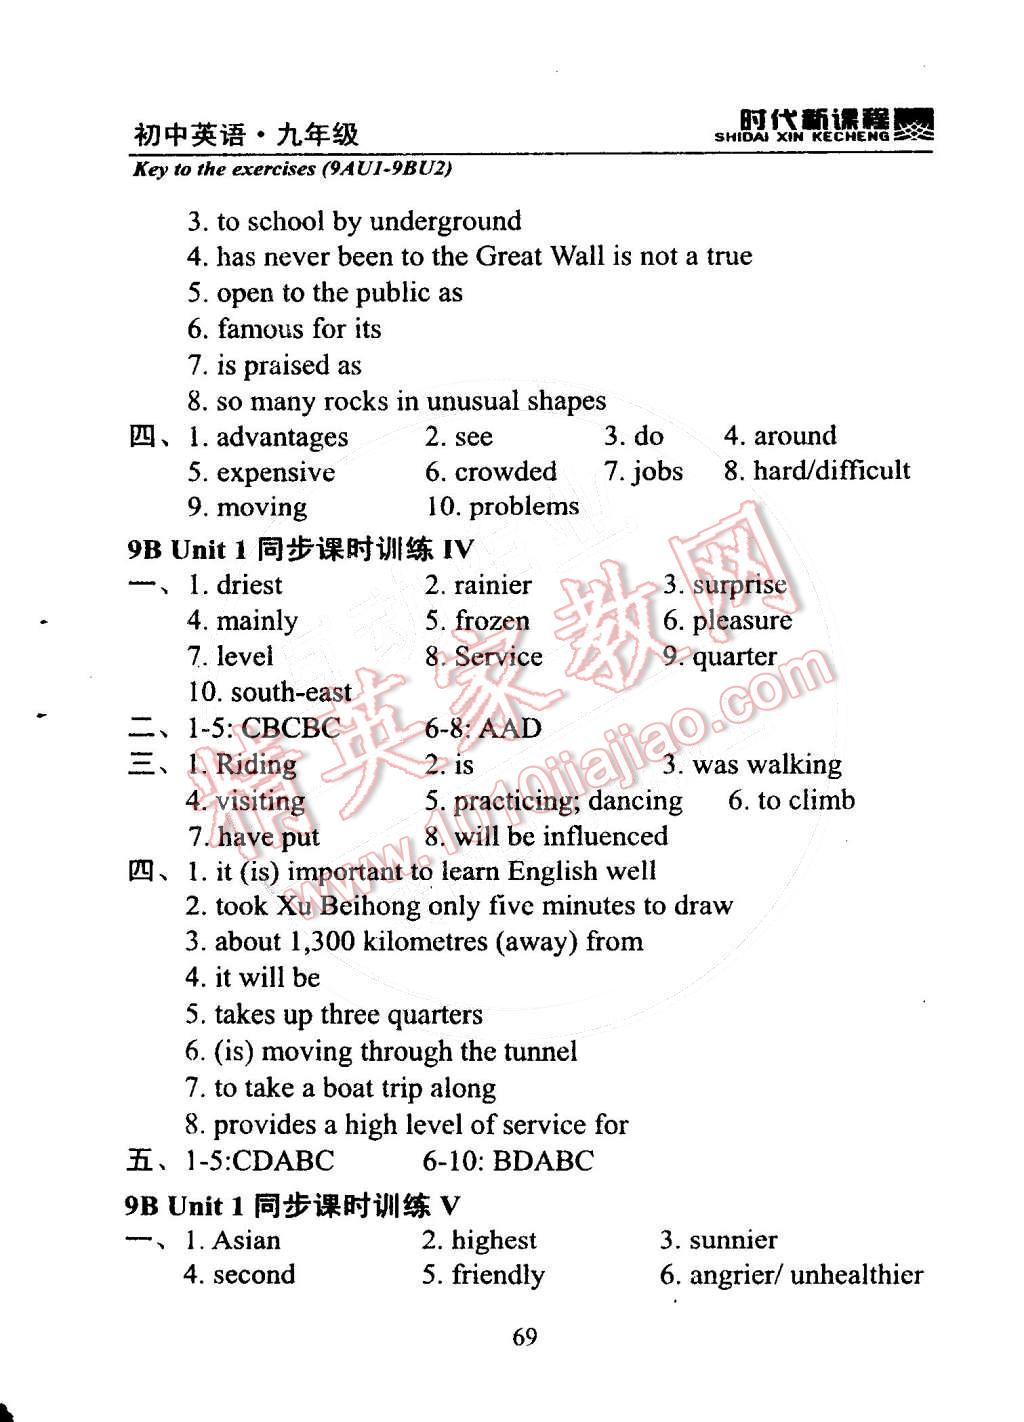 2014年时代新课程初中英语九年级上册 9BUnit 1 Asia第191页